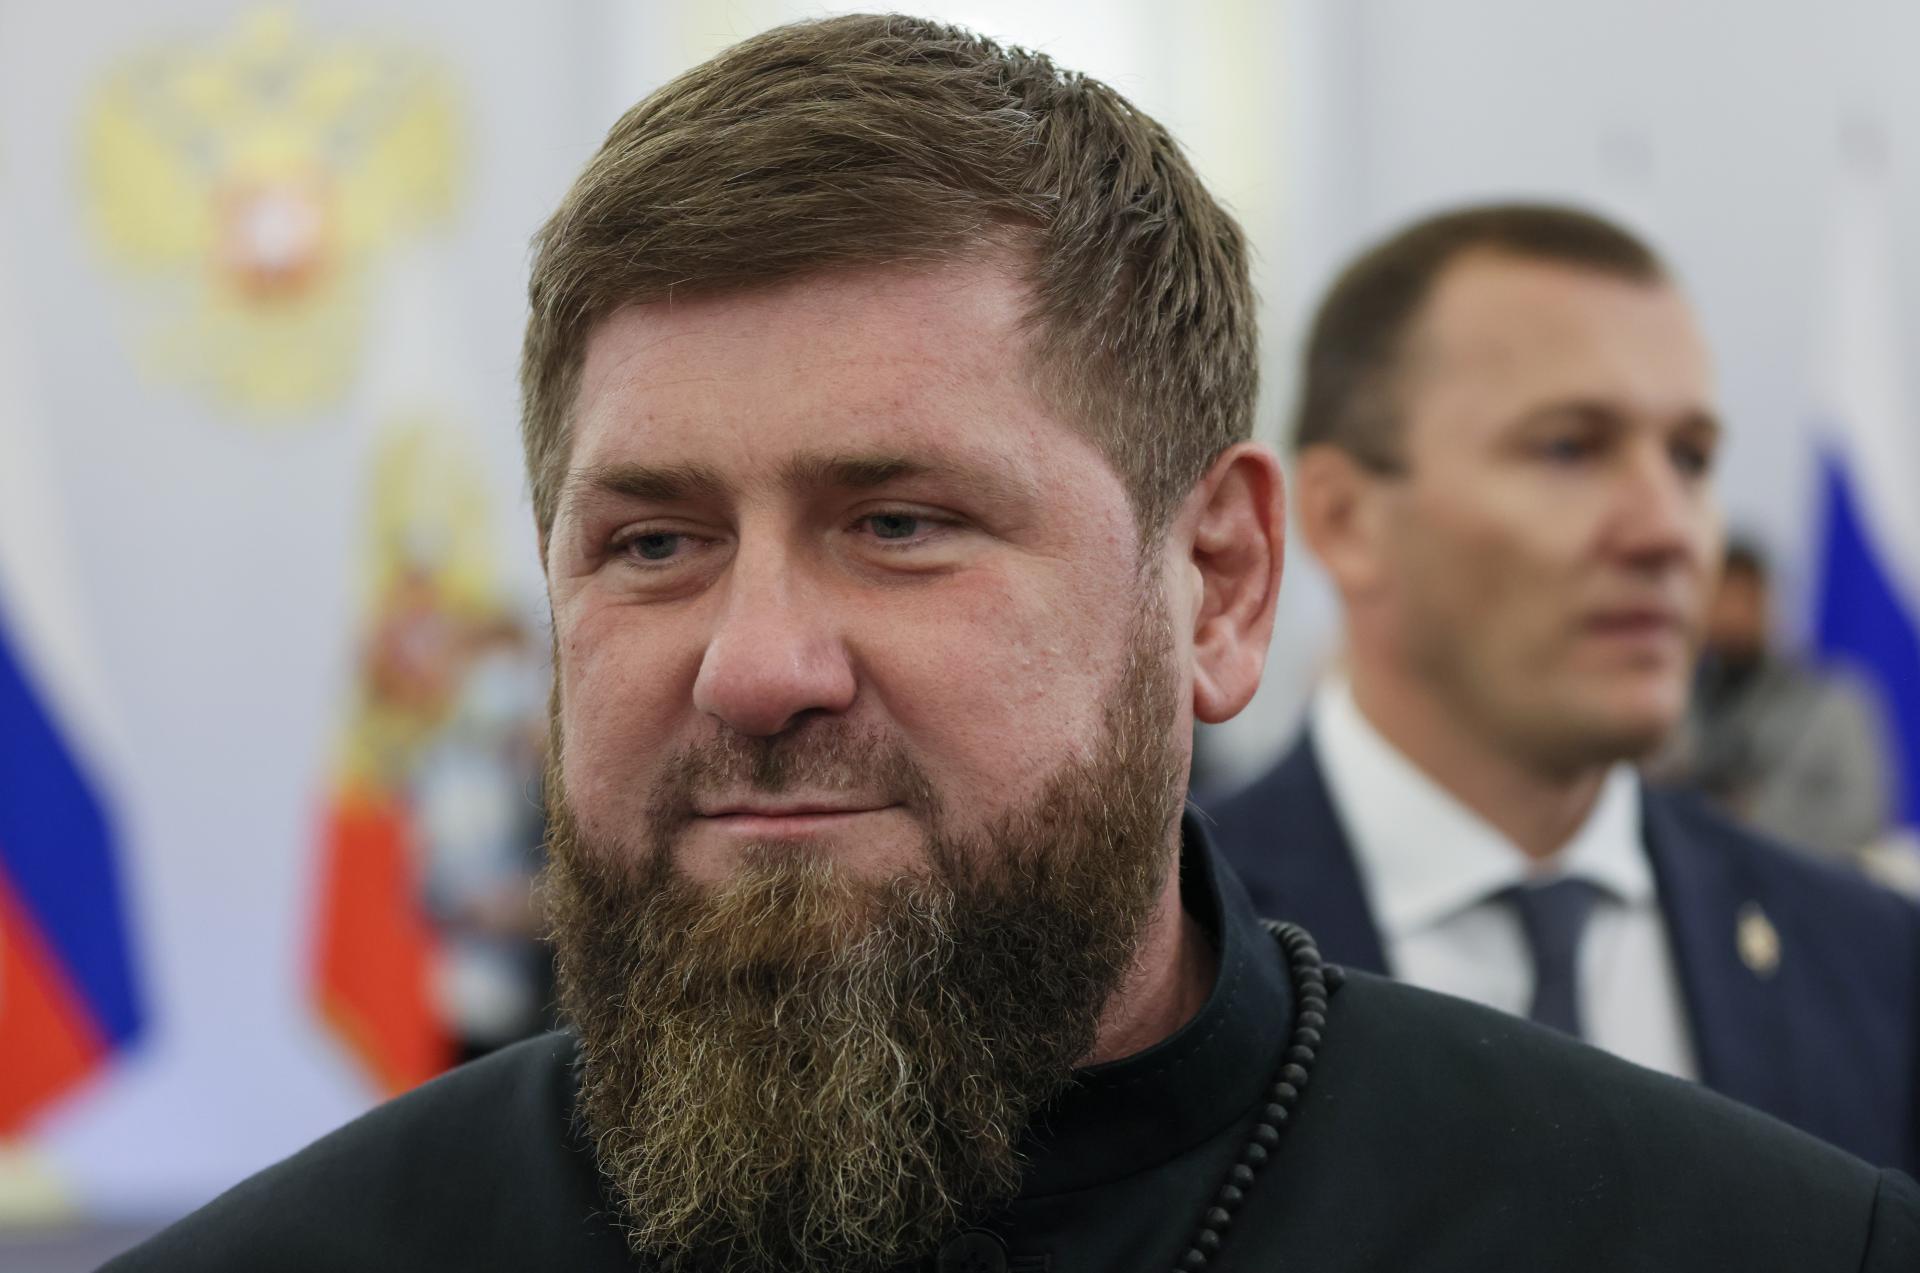 Veľký úspech pre Čečencov. Putin udelil Kadyrovovi, ktorý verboval na Ukrajinu, hodnosť generálplukovníka